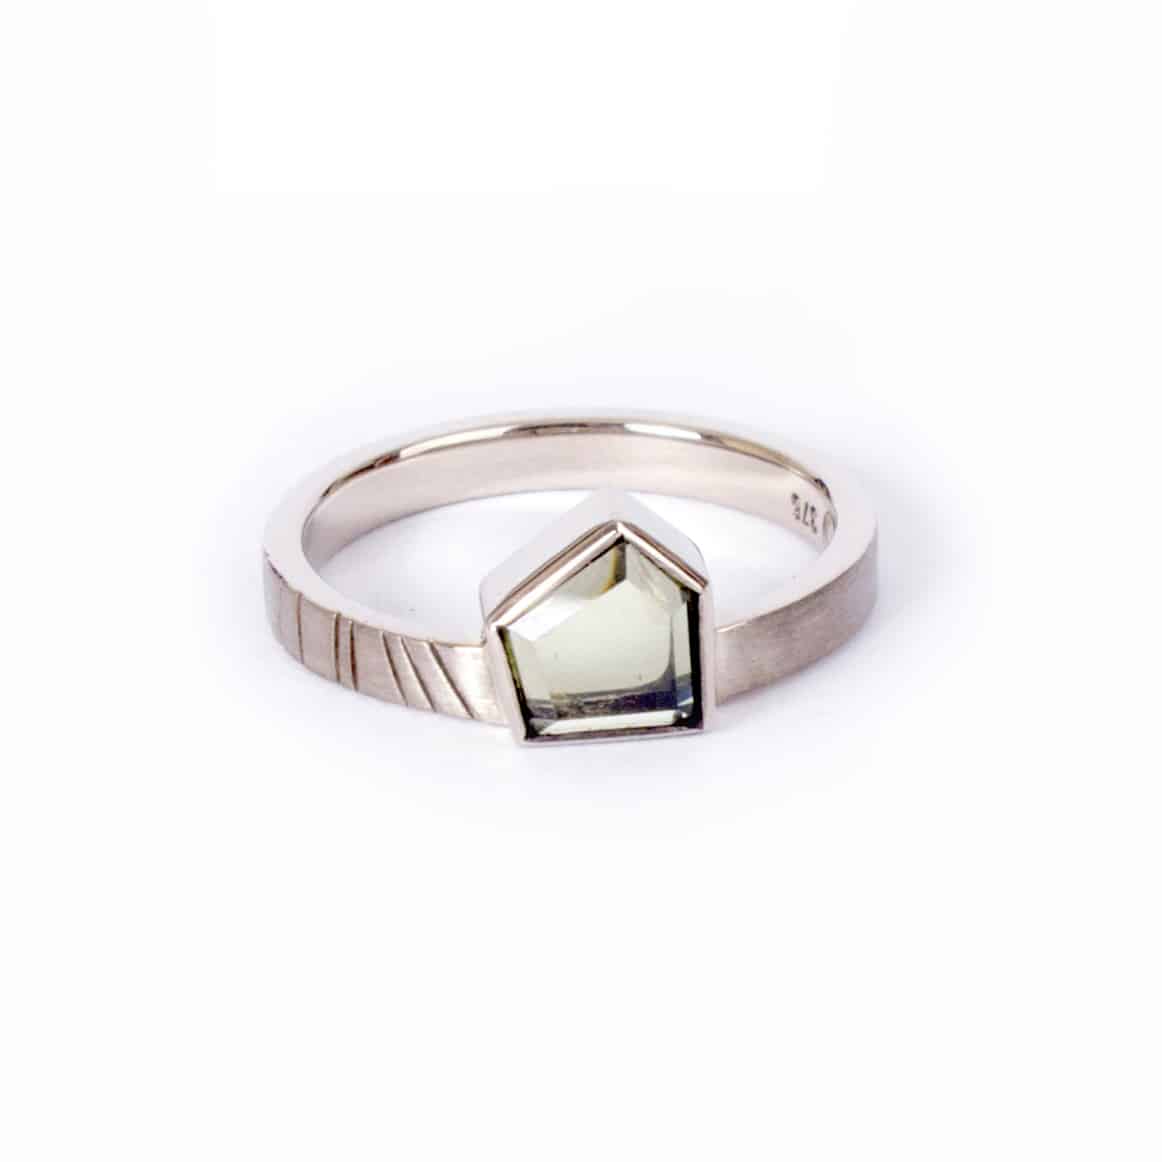 Unique engagement rings by Australian jewelers / Susan Ewington